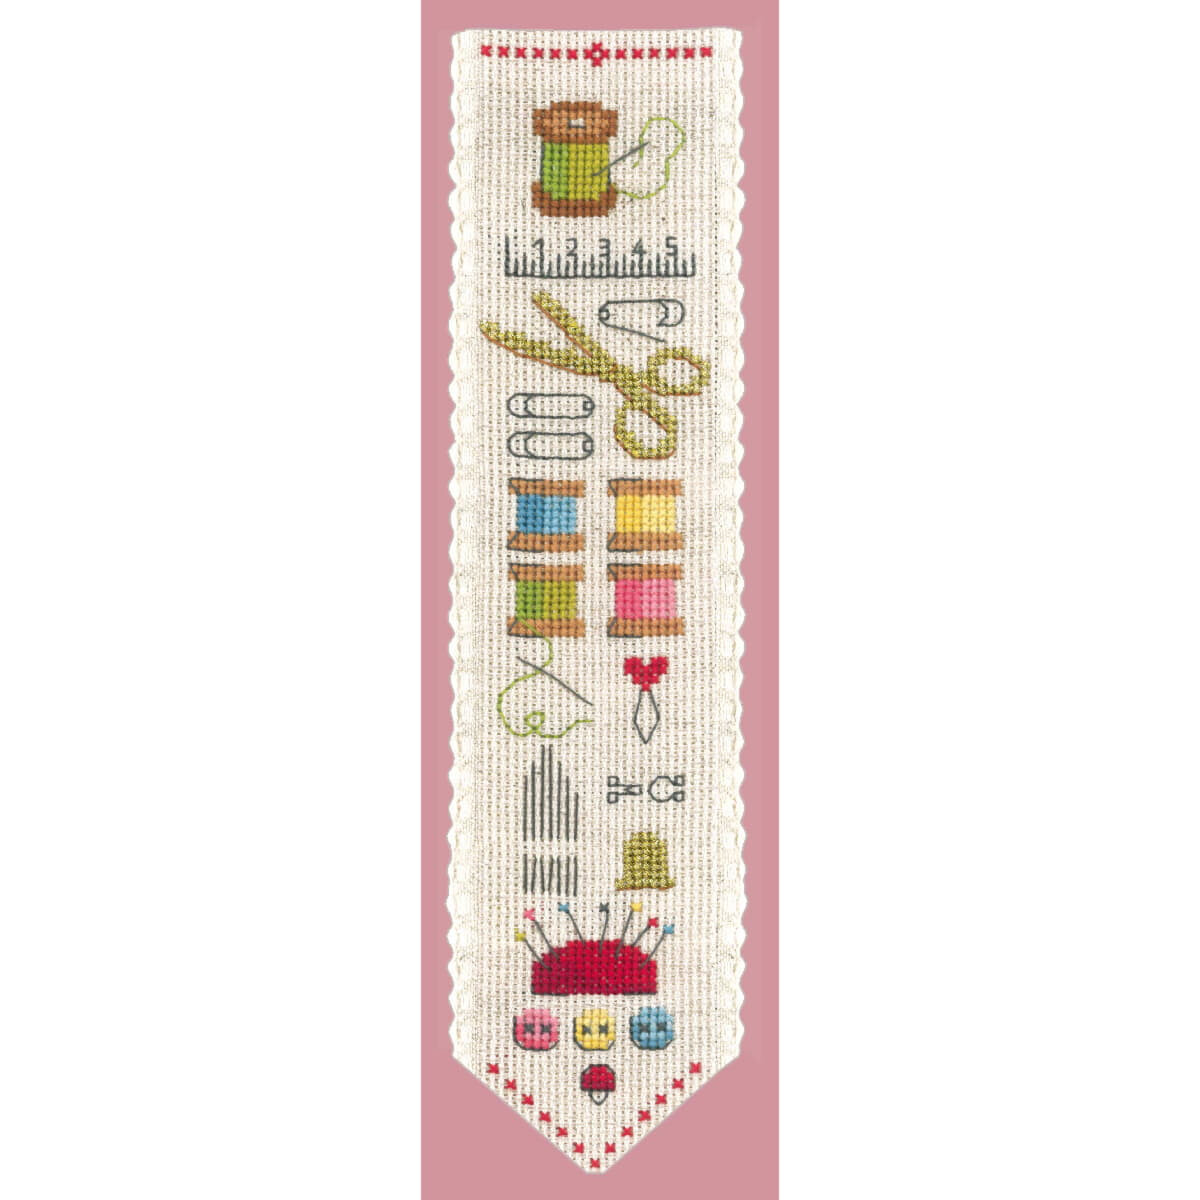 Le Bonheur des Dames bookmark counted cross stitch kit...